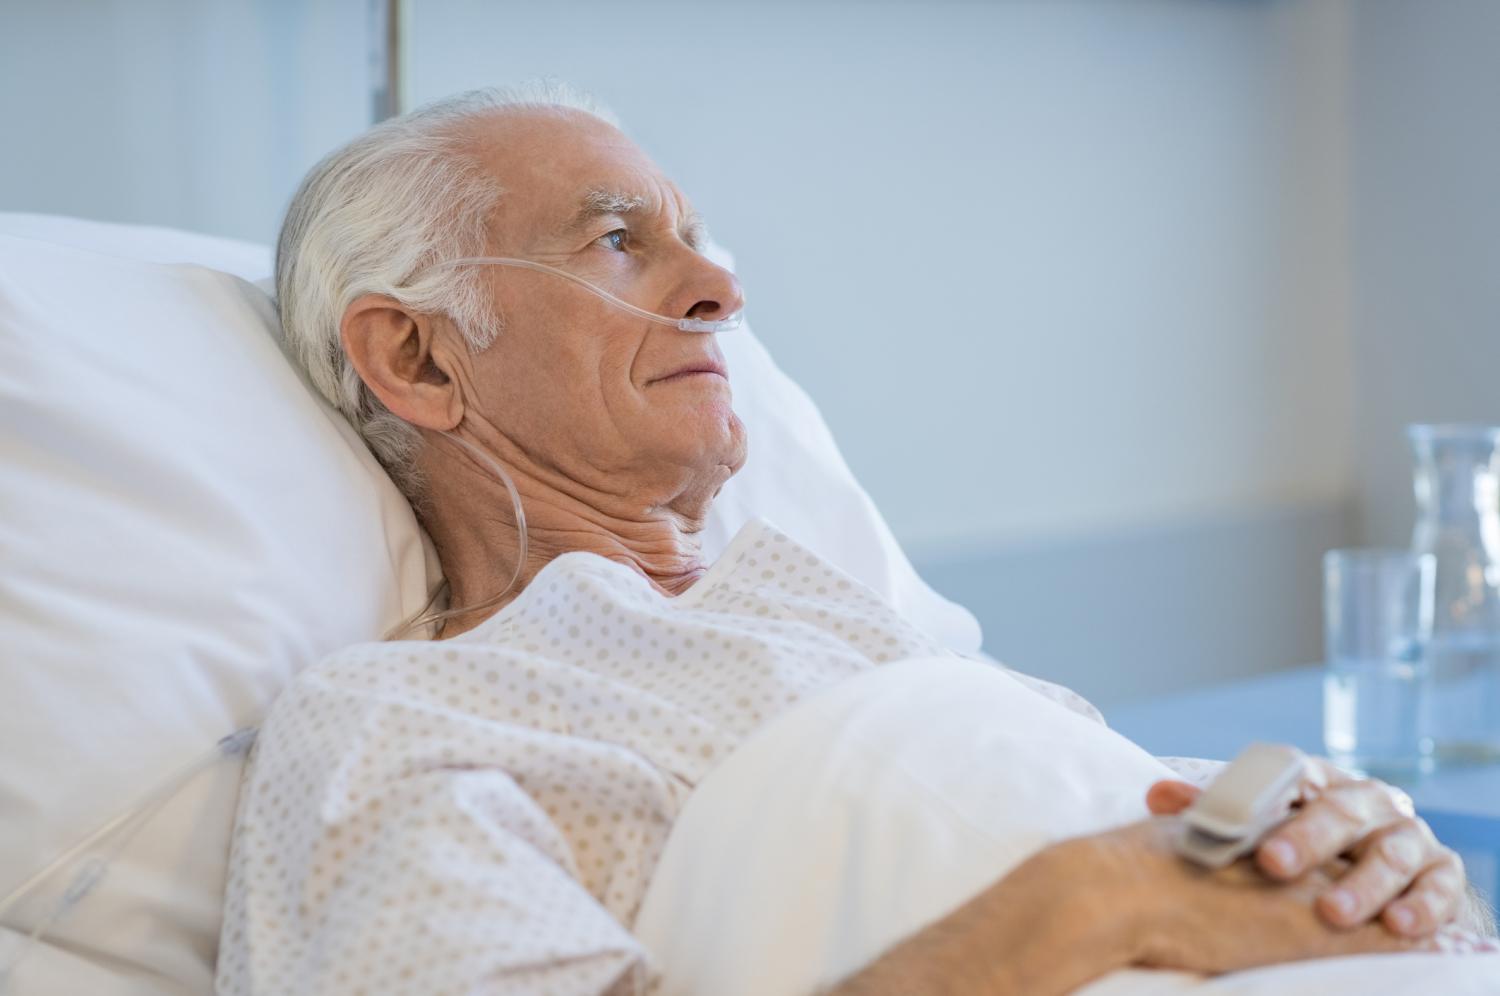 Older man in hospital bed